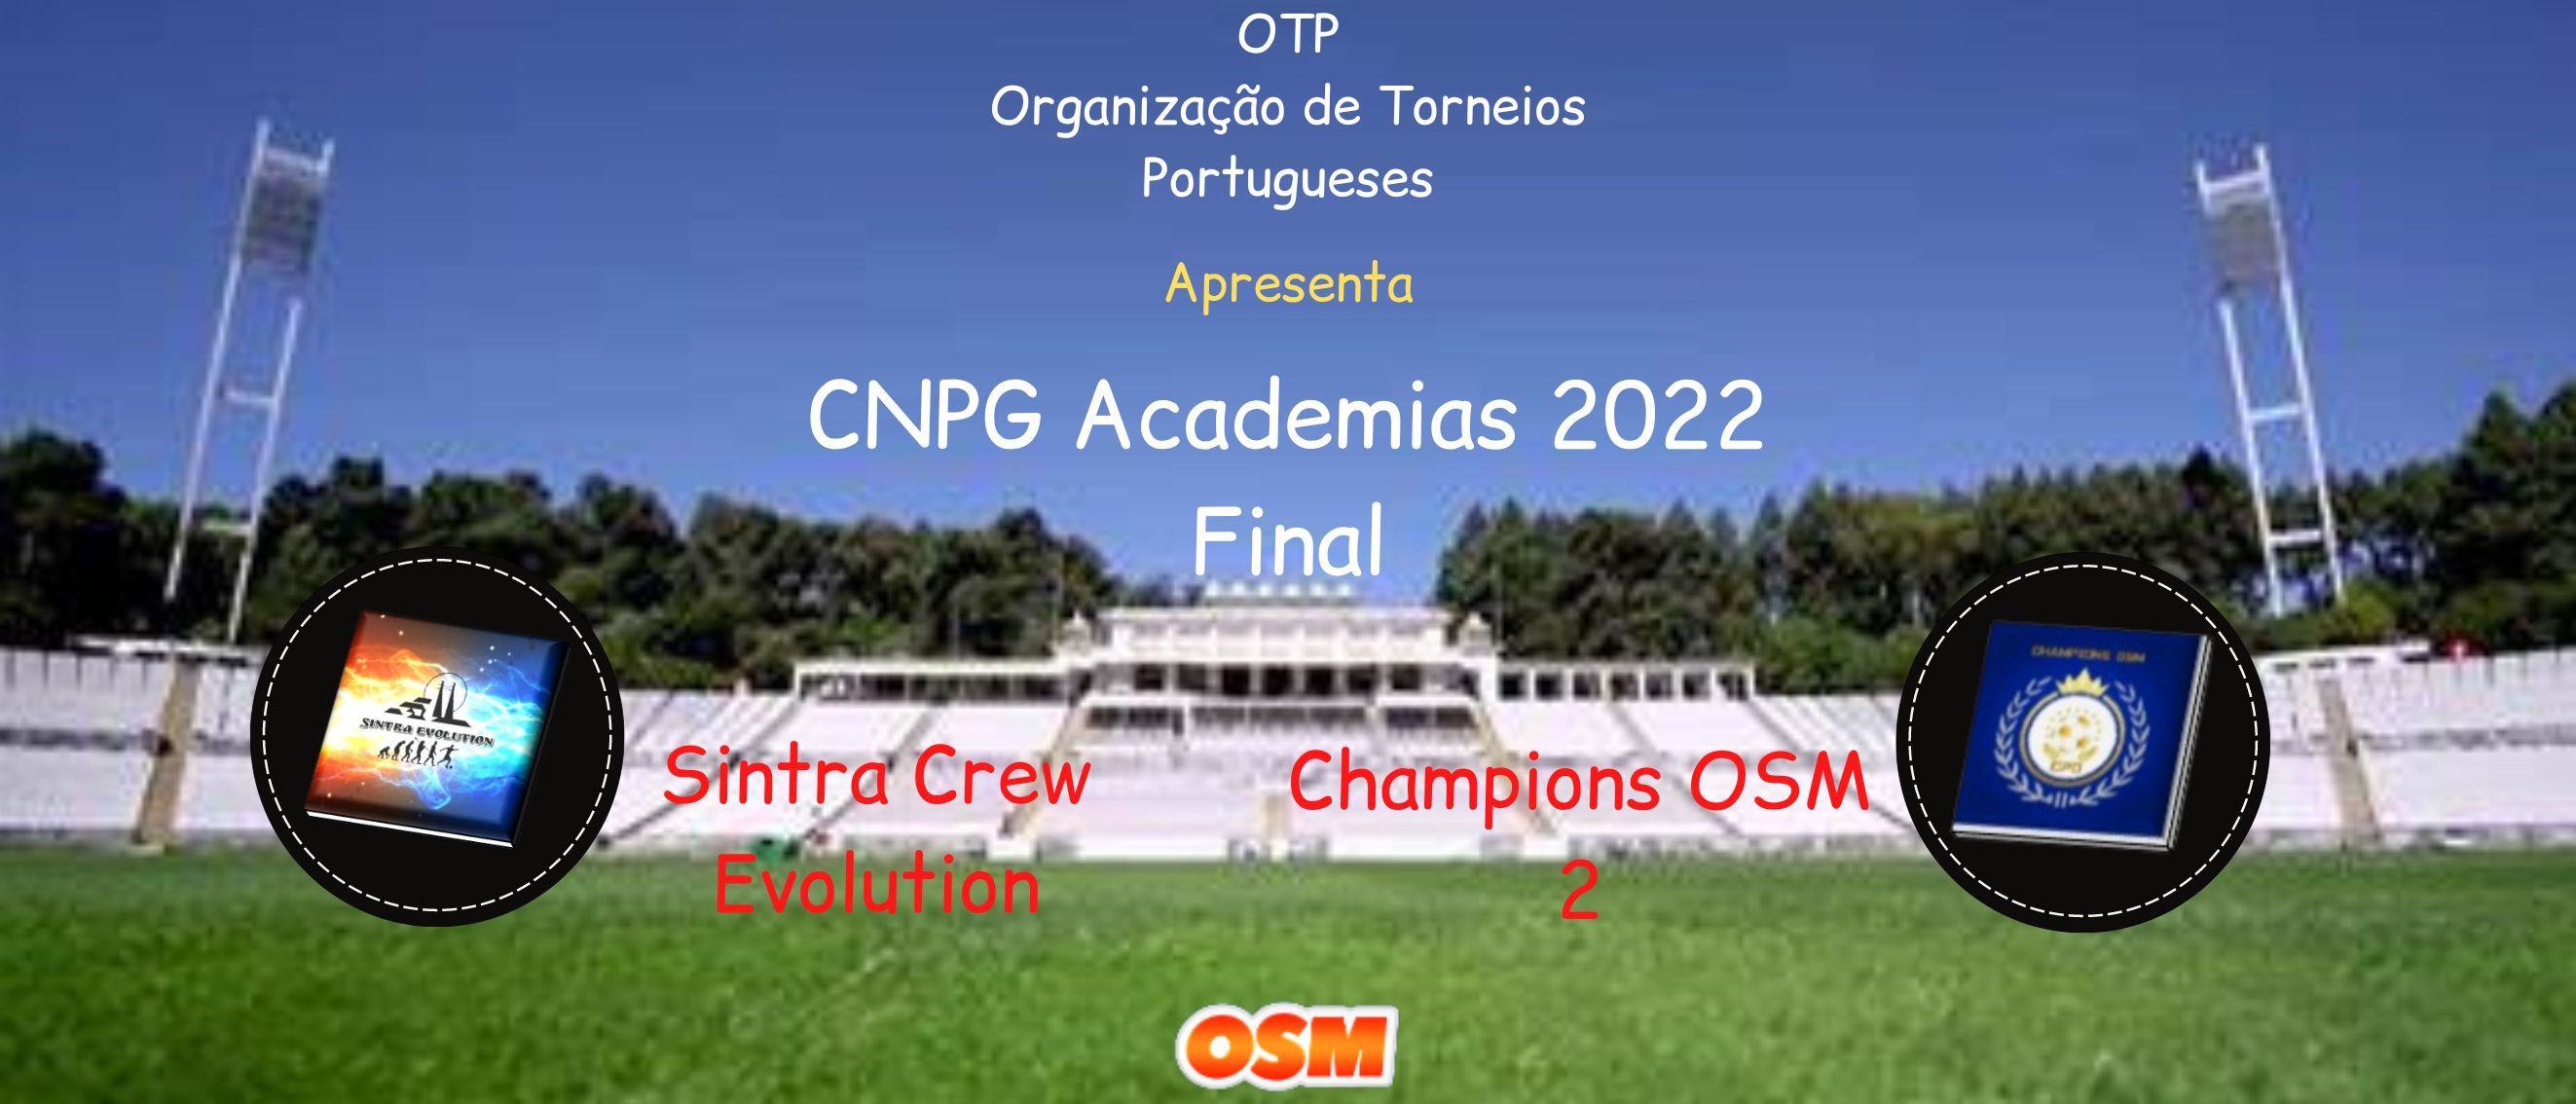 OTP Organização de Torneios Portugueses CNPG Academias FINAL.jpg